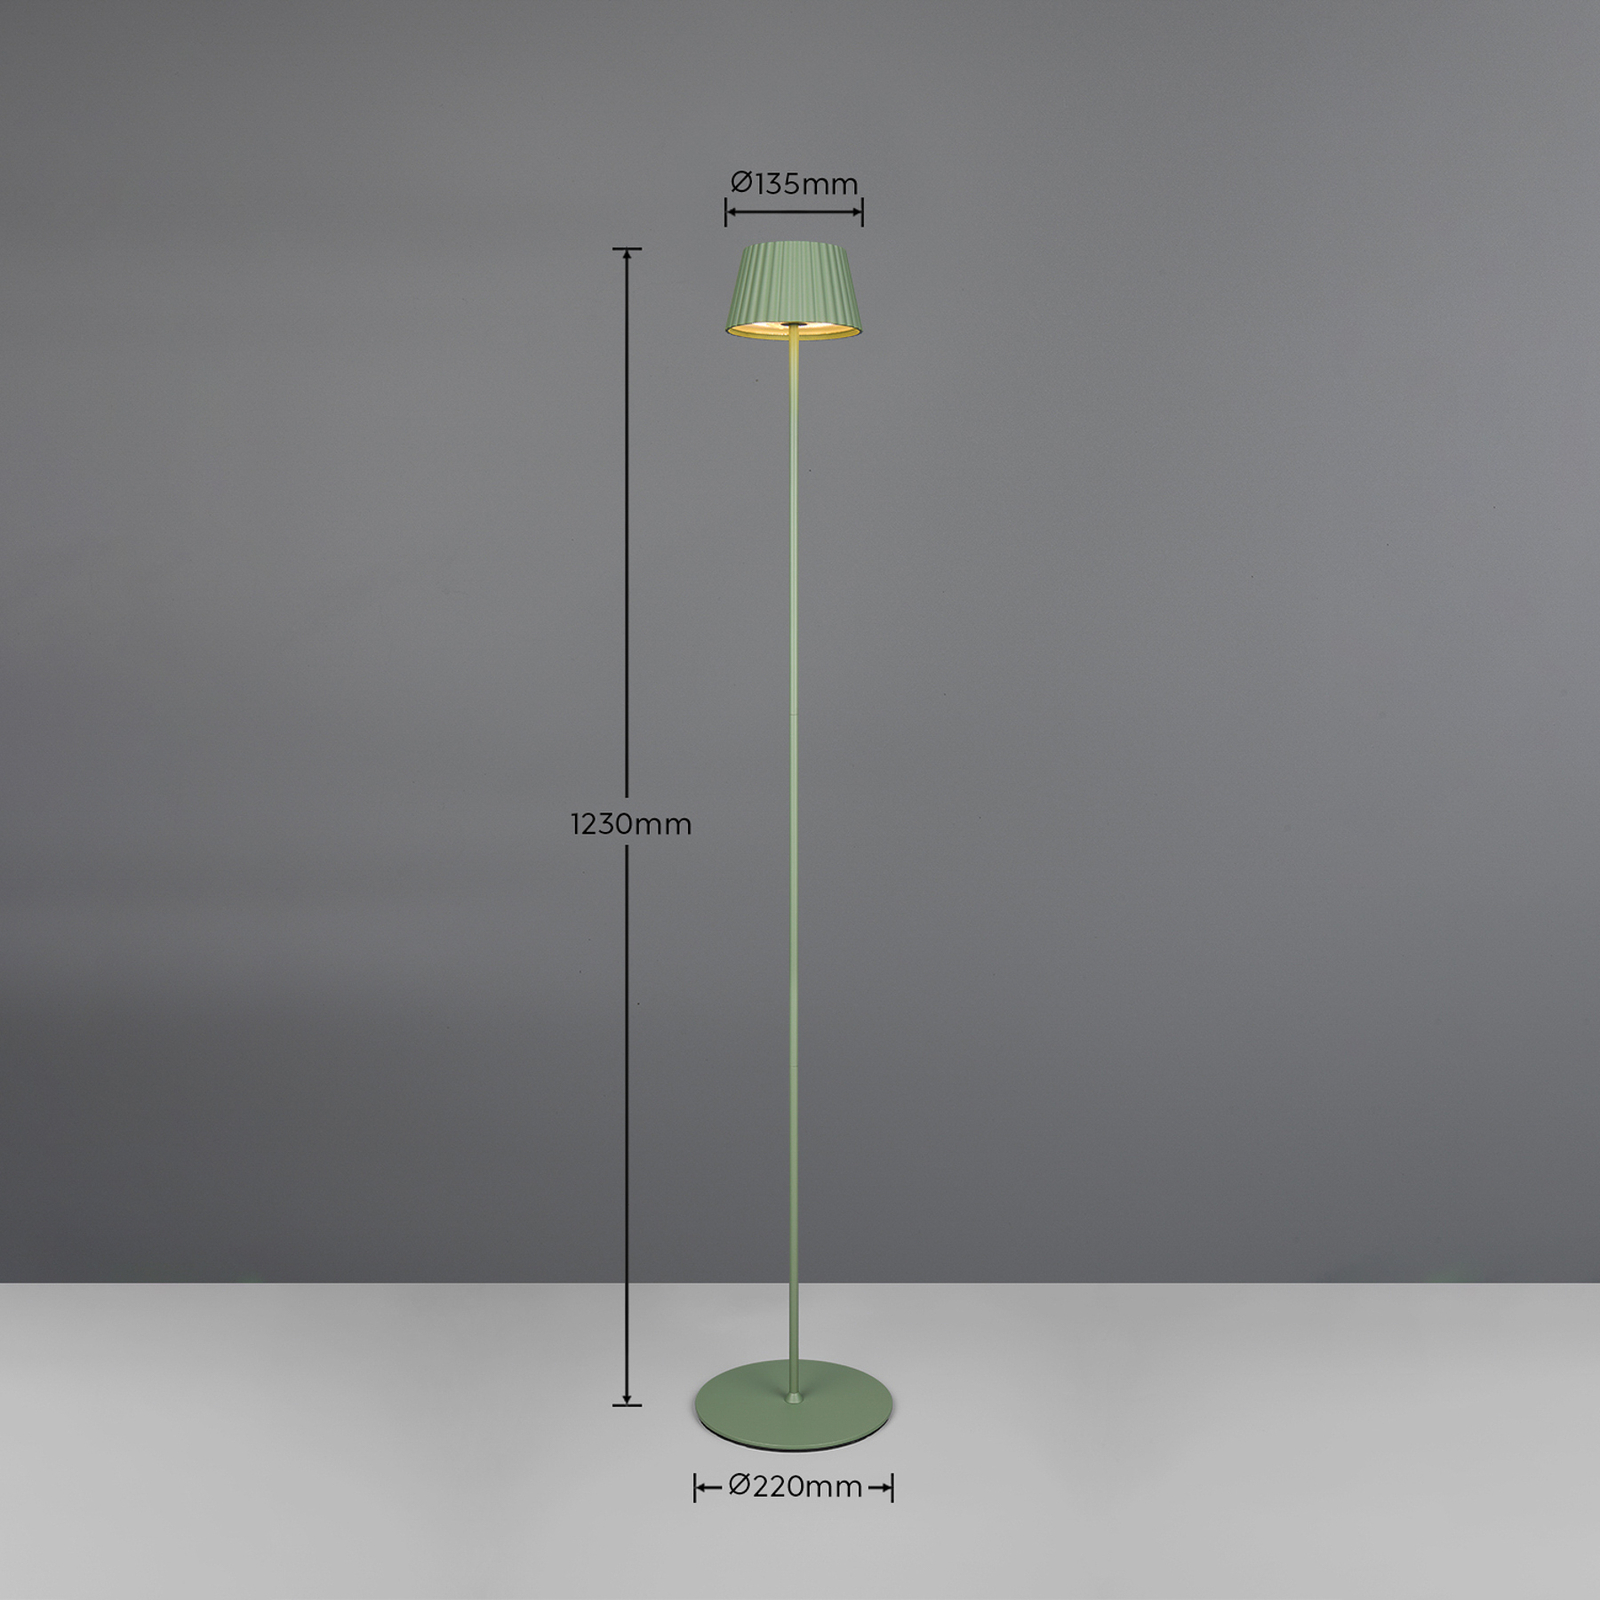 Suarez LED oppladbar gulvlampe, grønn, høyde 123 cm, metall